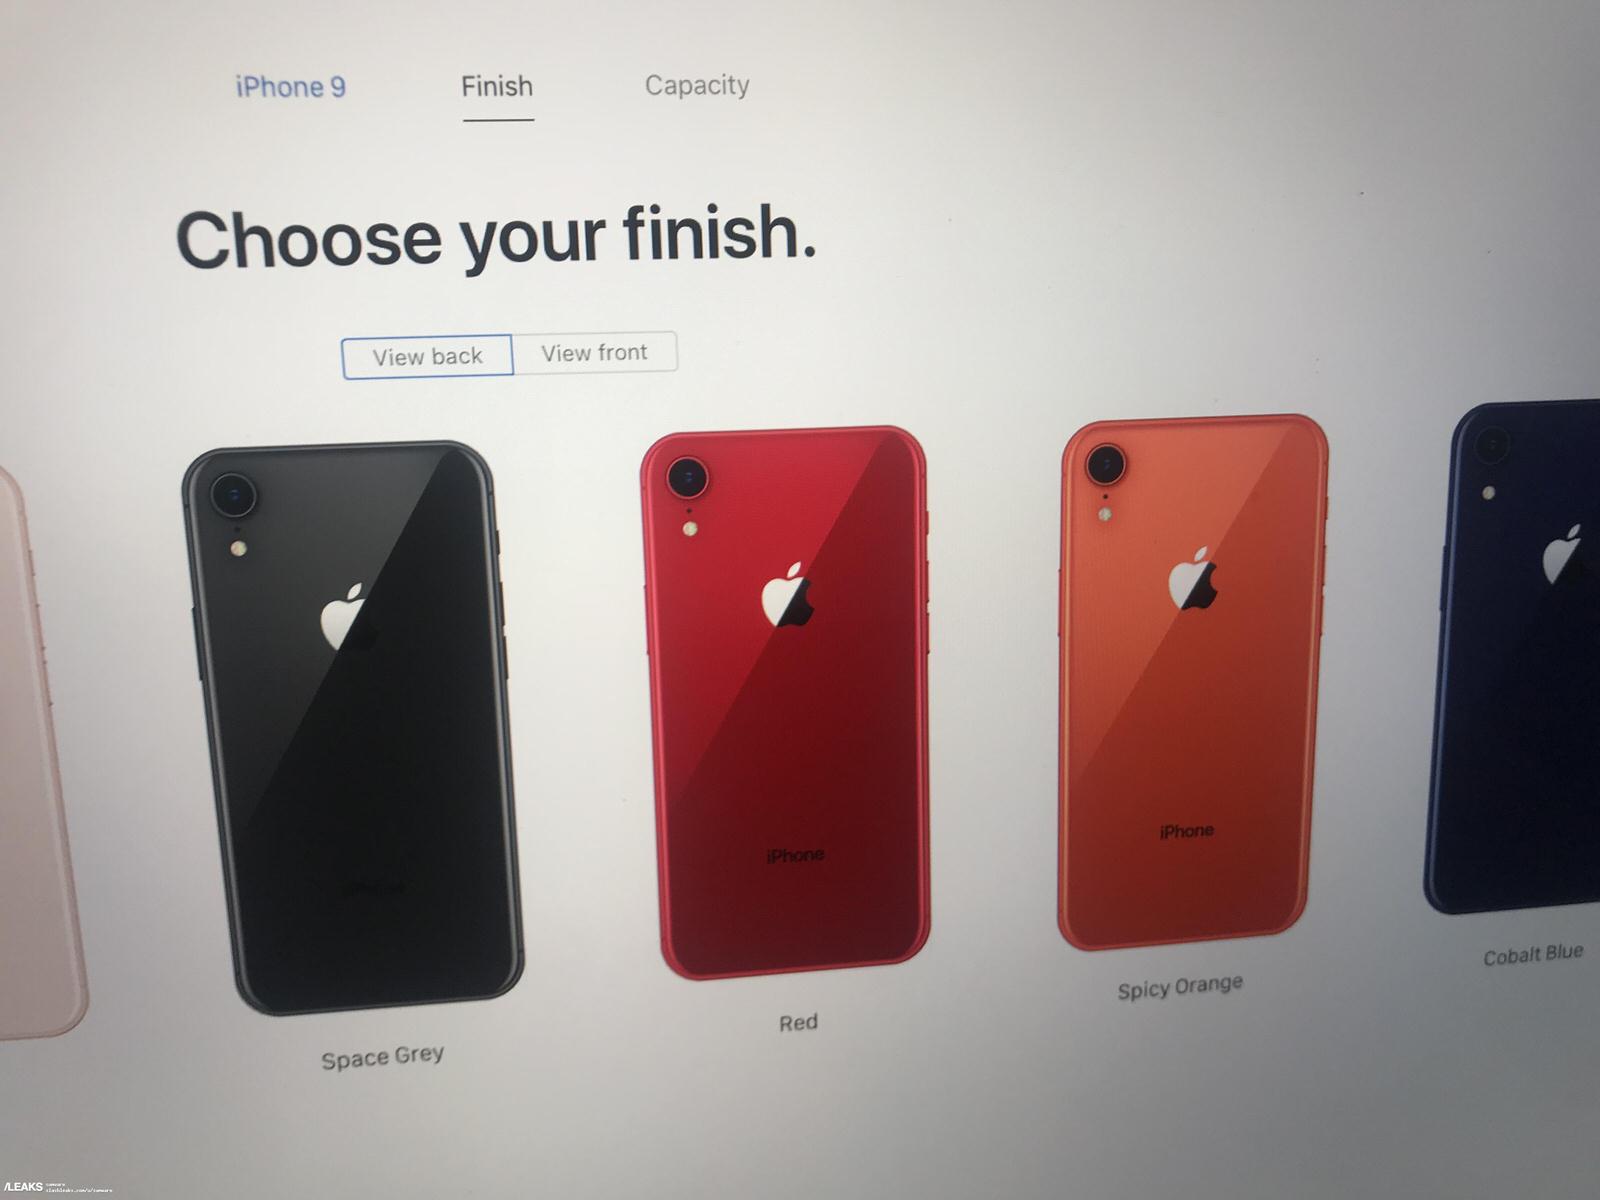 「iPhone 9」の新色にスパイシーオレンジ、コバルトブルー追加？公式サイトの画像流出か